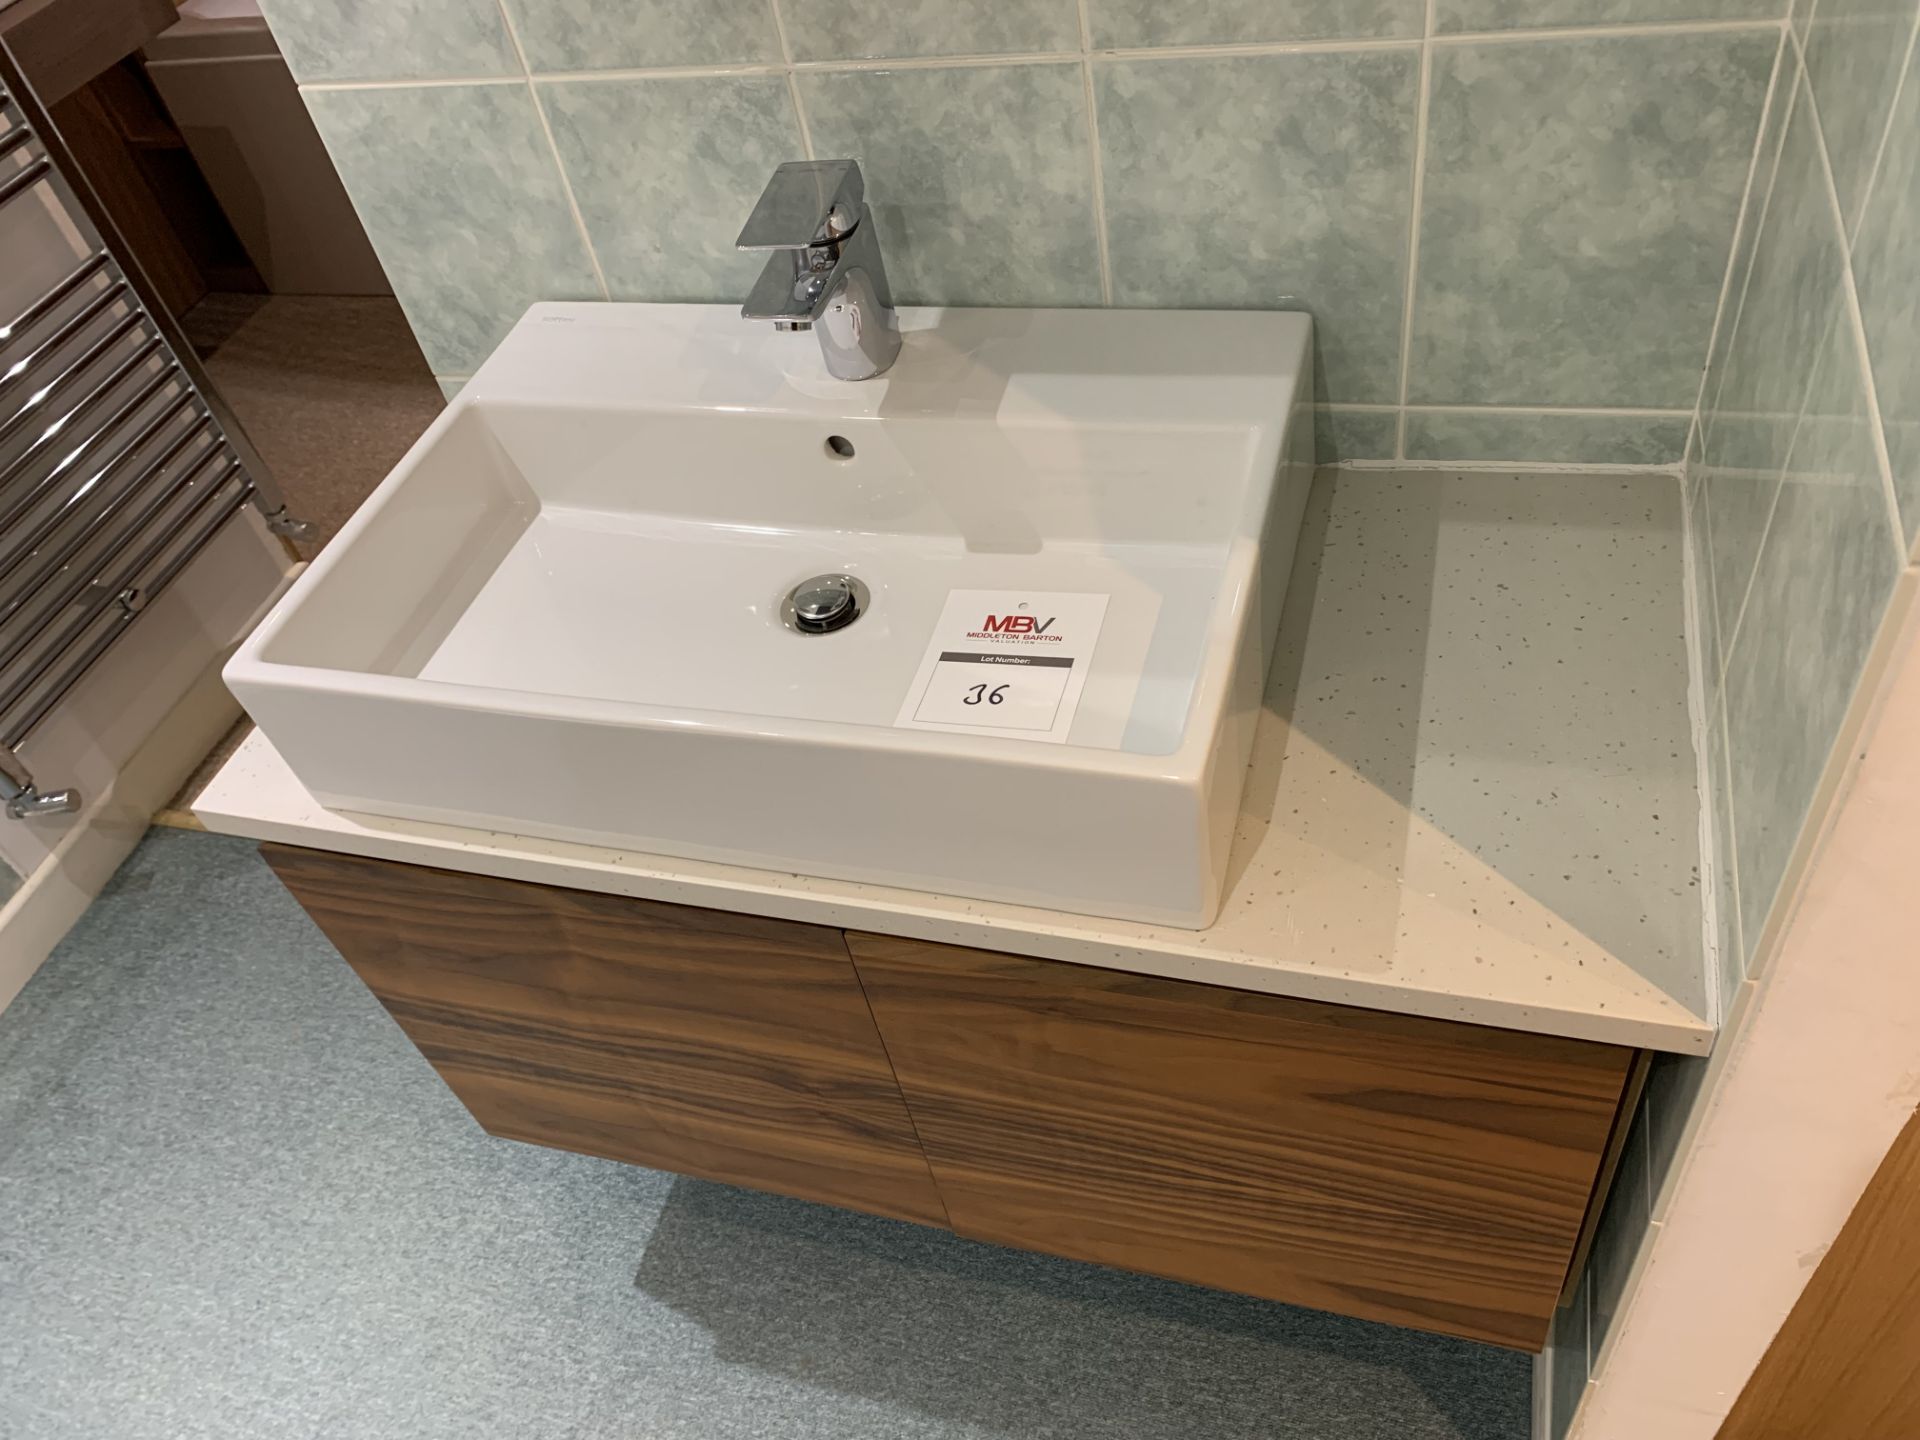 Display bathroom sink and floating pedestal